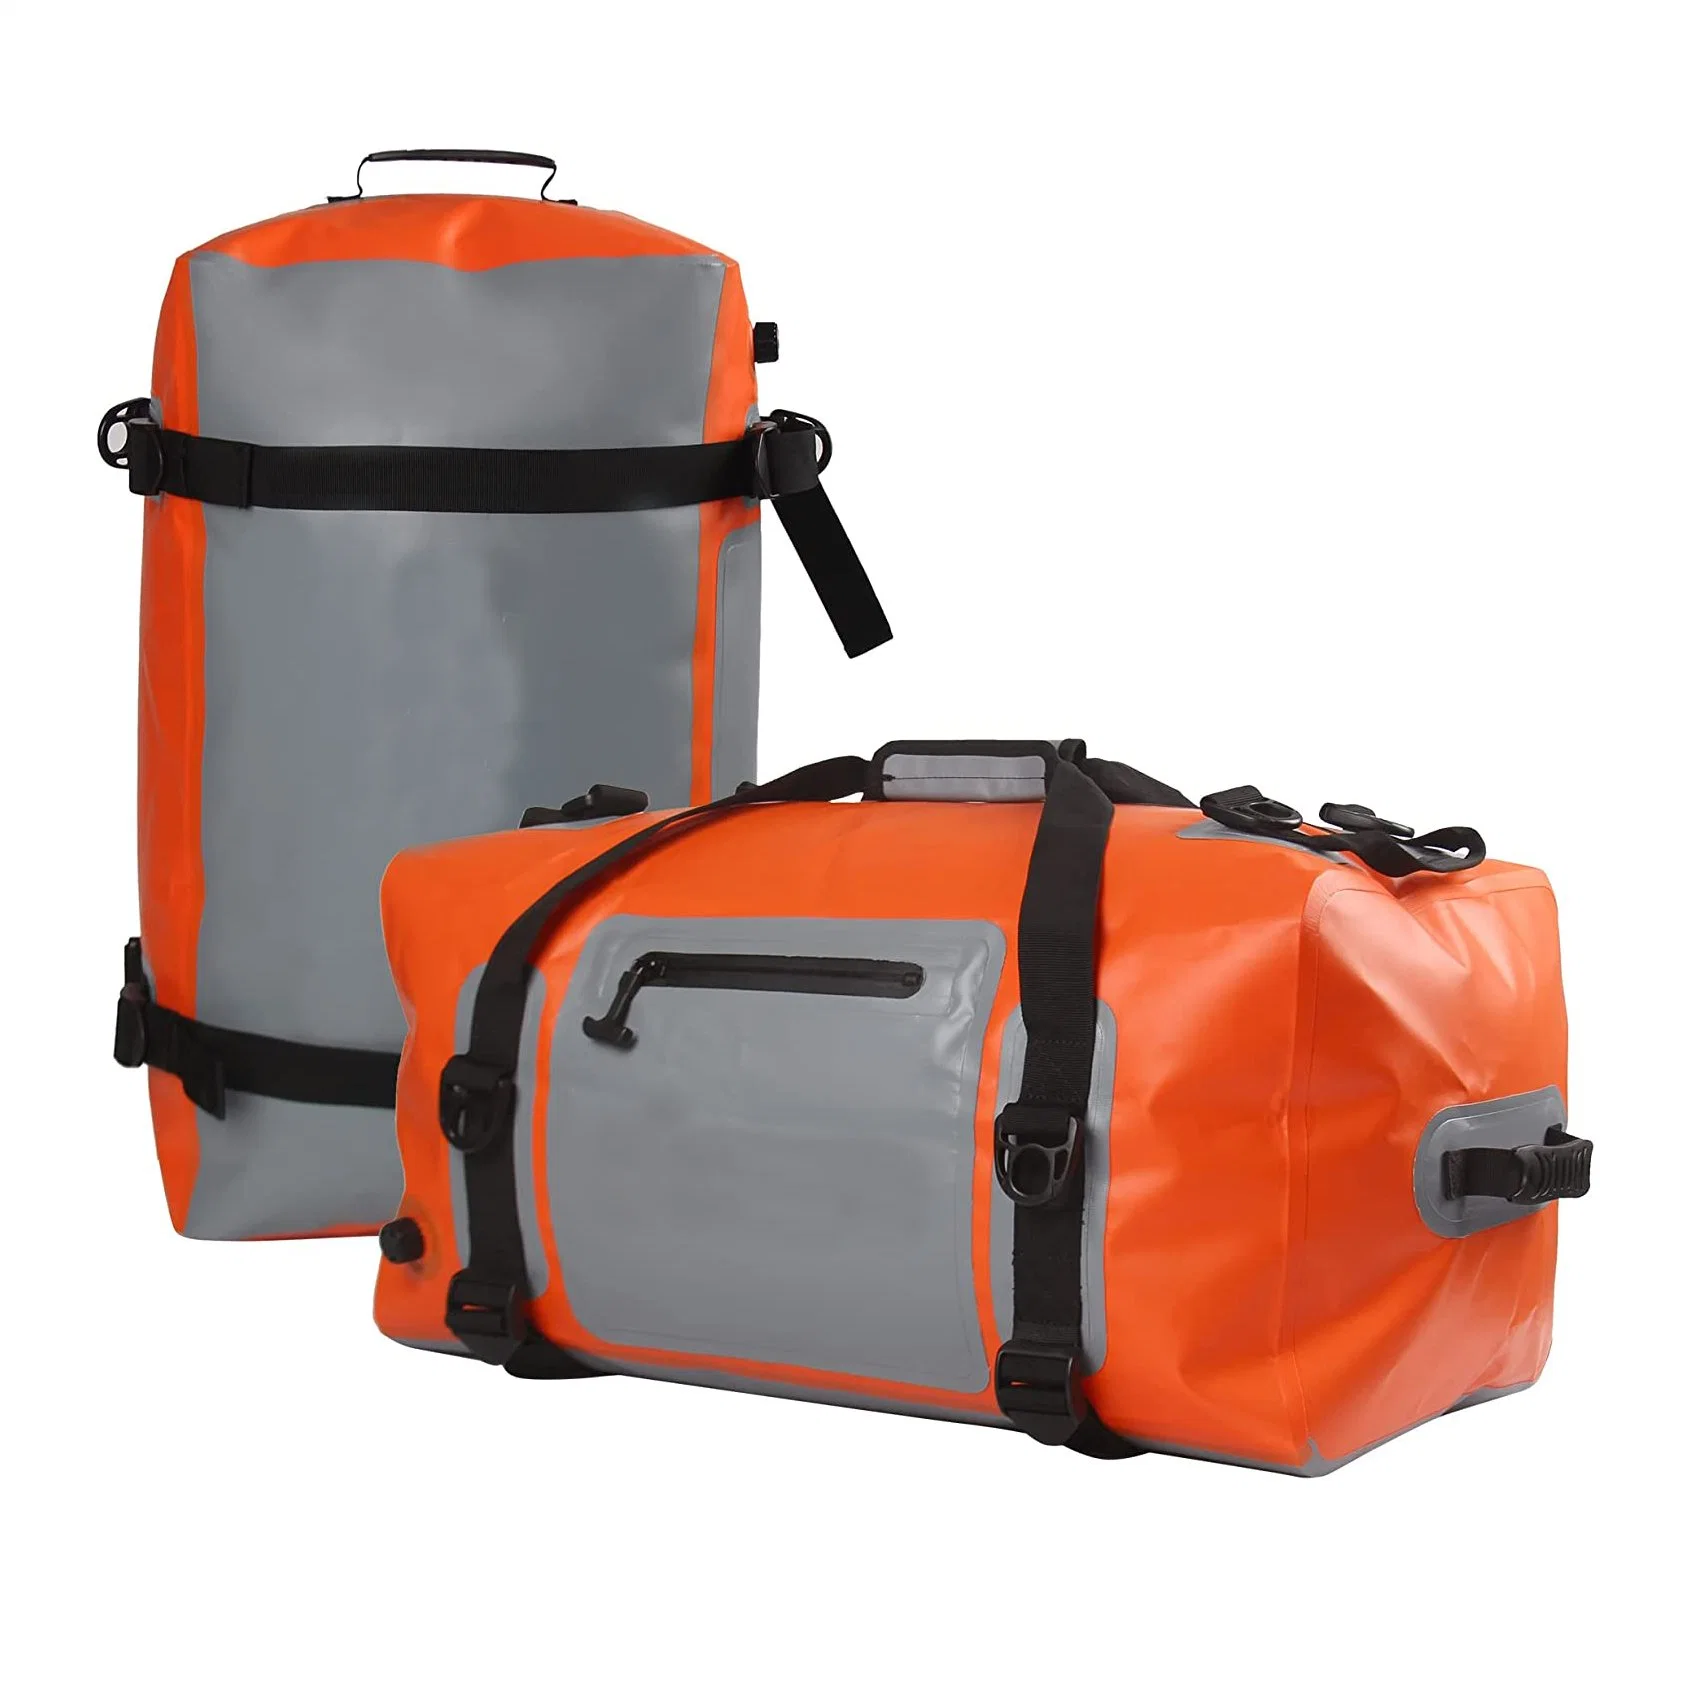 OEM ODM Outdoor PVC Tarpaulin Duffle Bag Waterproof Sport Gym Duffel Bag for Travel Camping